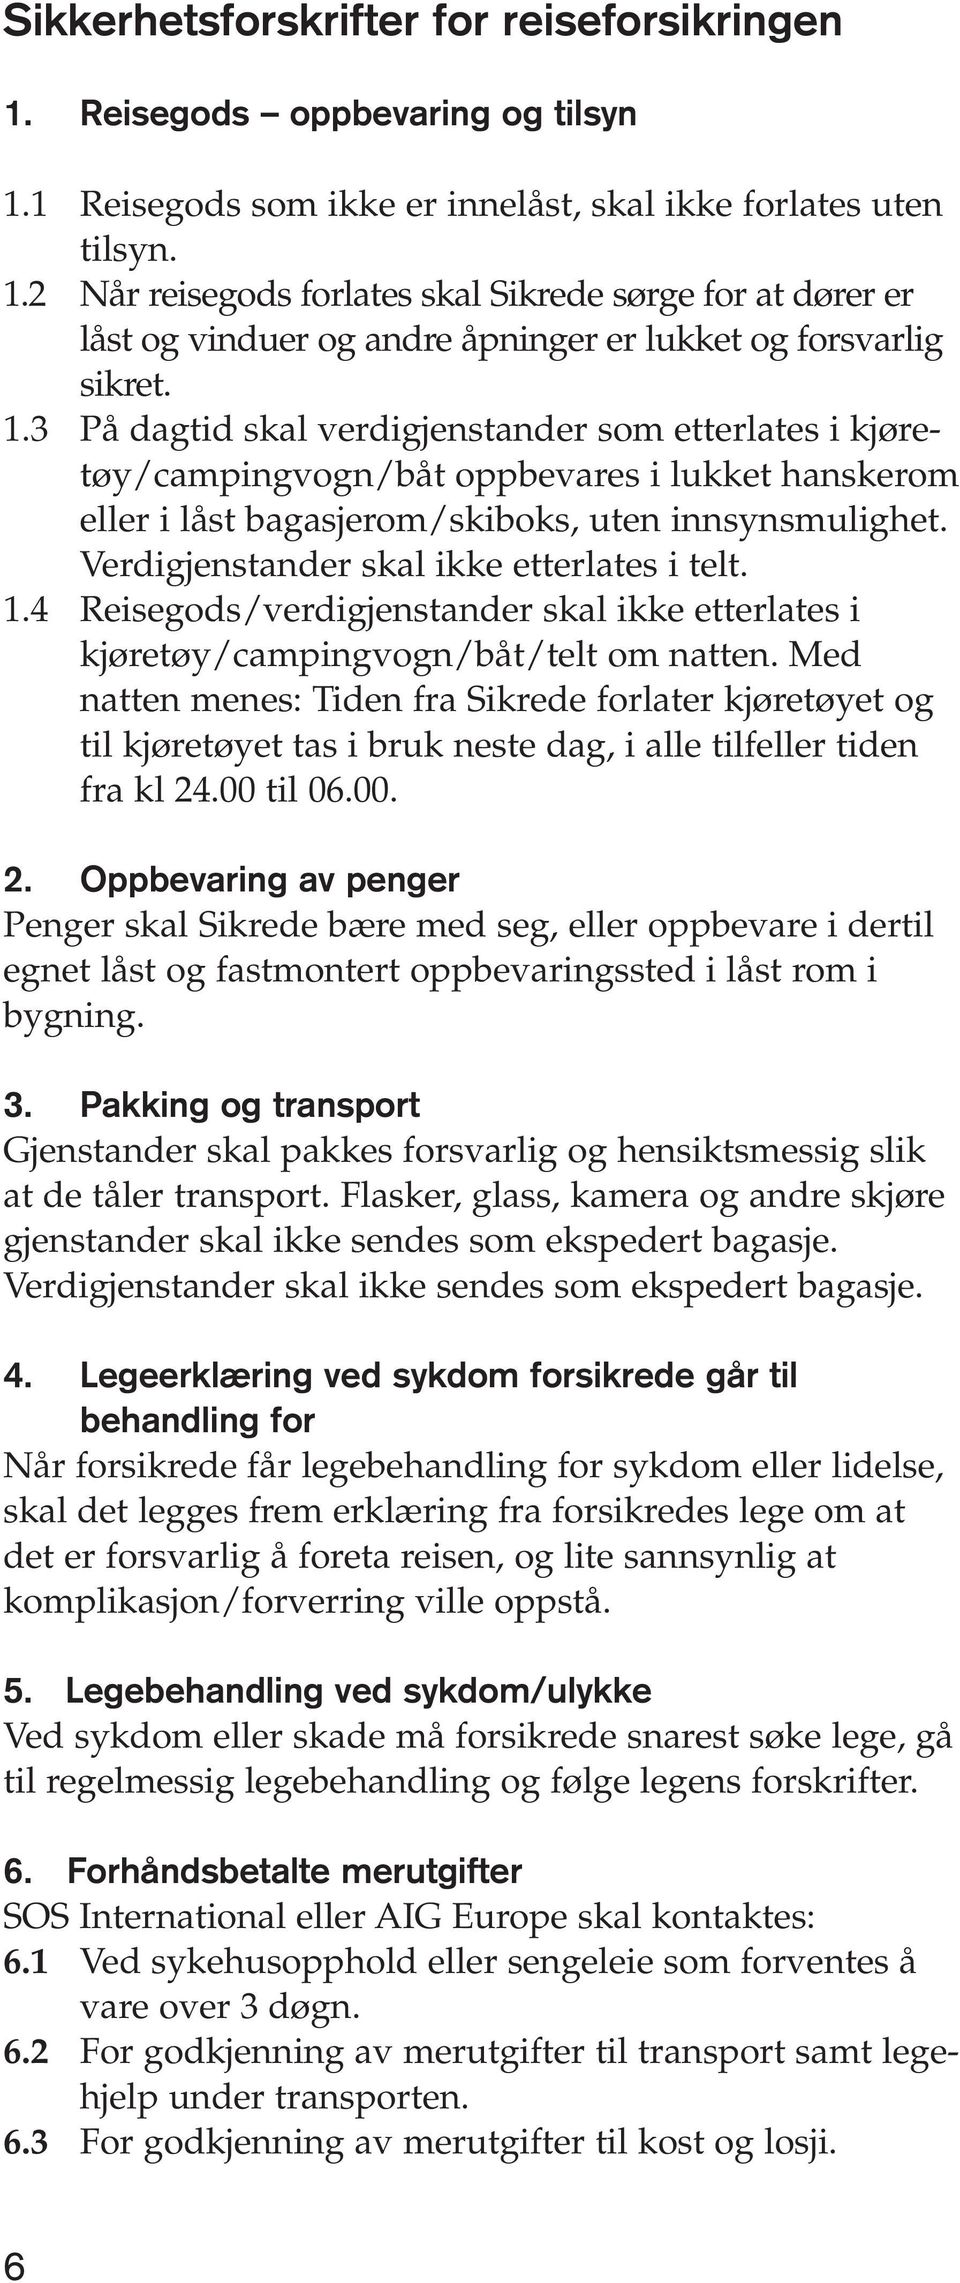 Verdigjenstander skal ikke etterlates i telt. 1.4 Reisegods/verdigjenstander skal ikke etterlates i kjøretøy/campingvogn/båt/telt om natten.